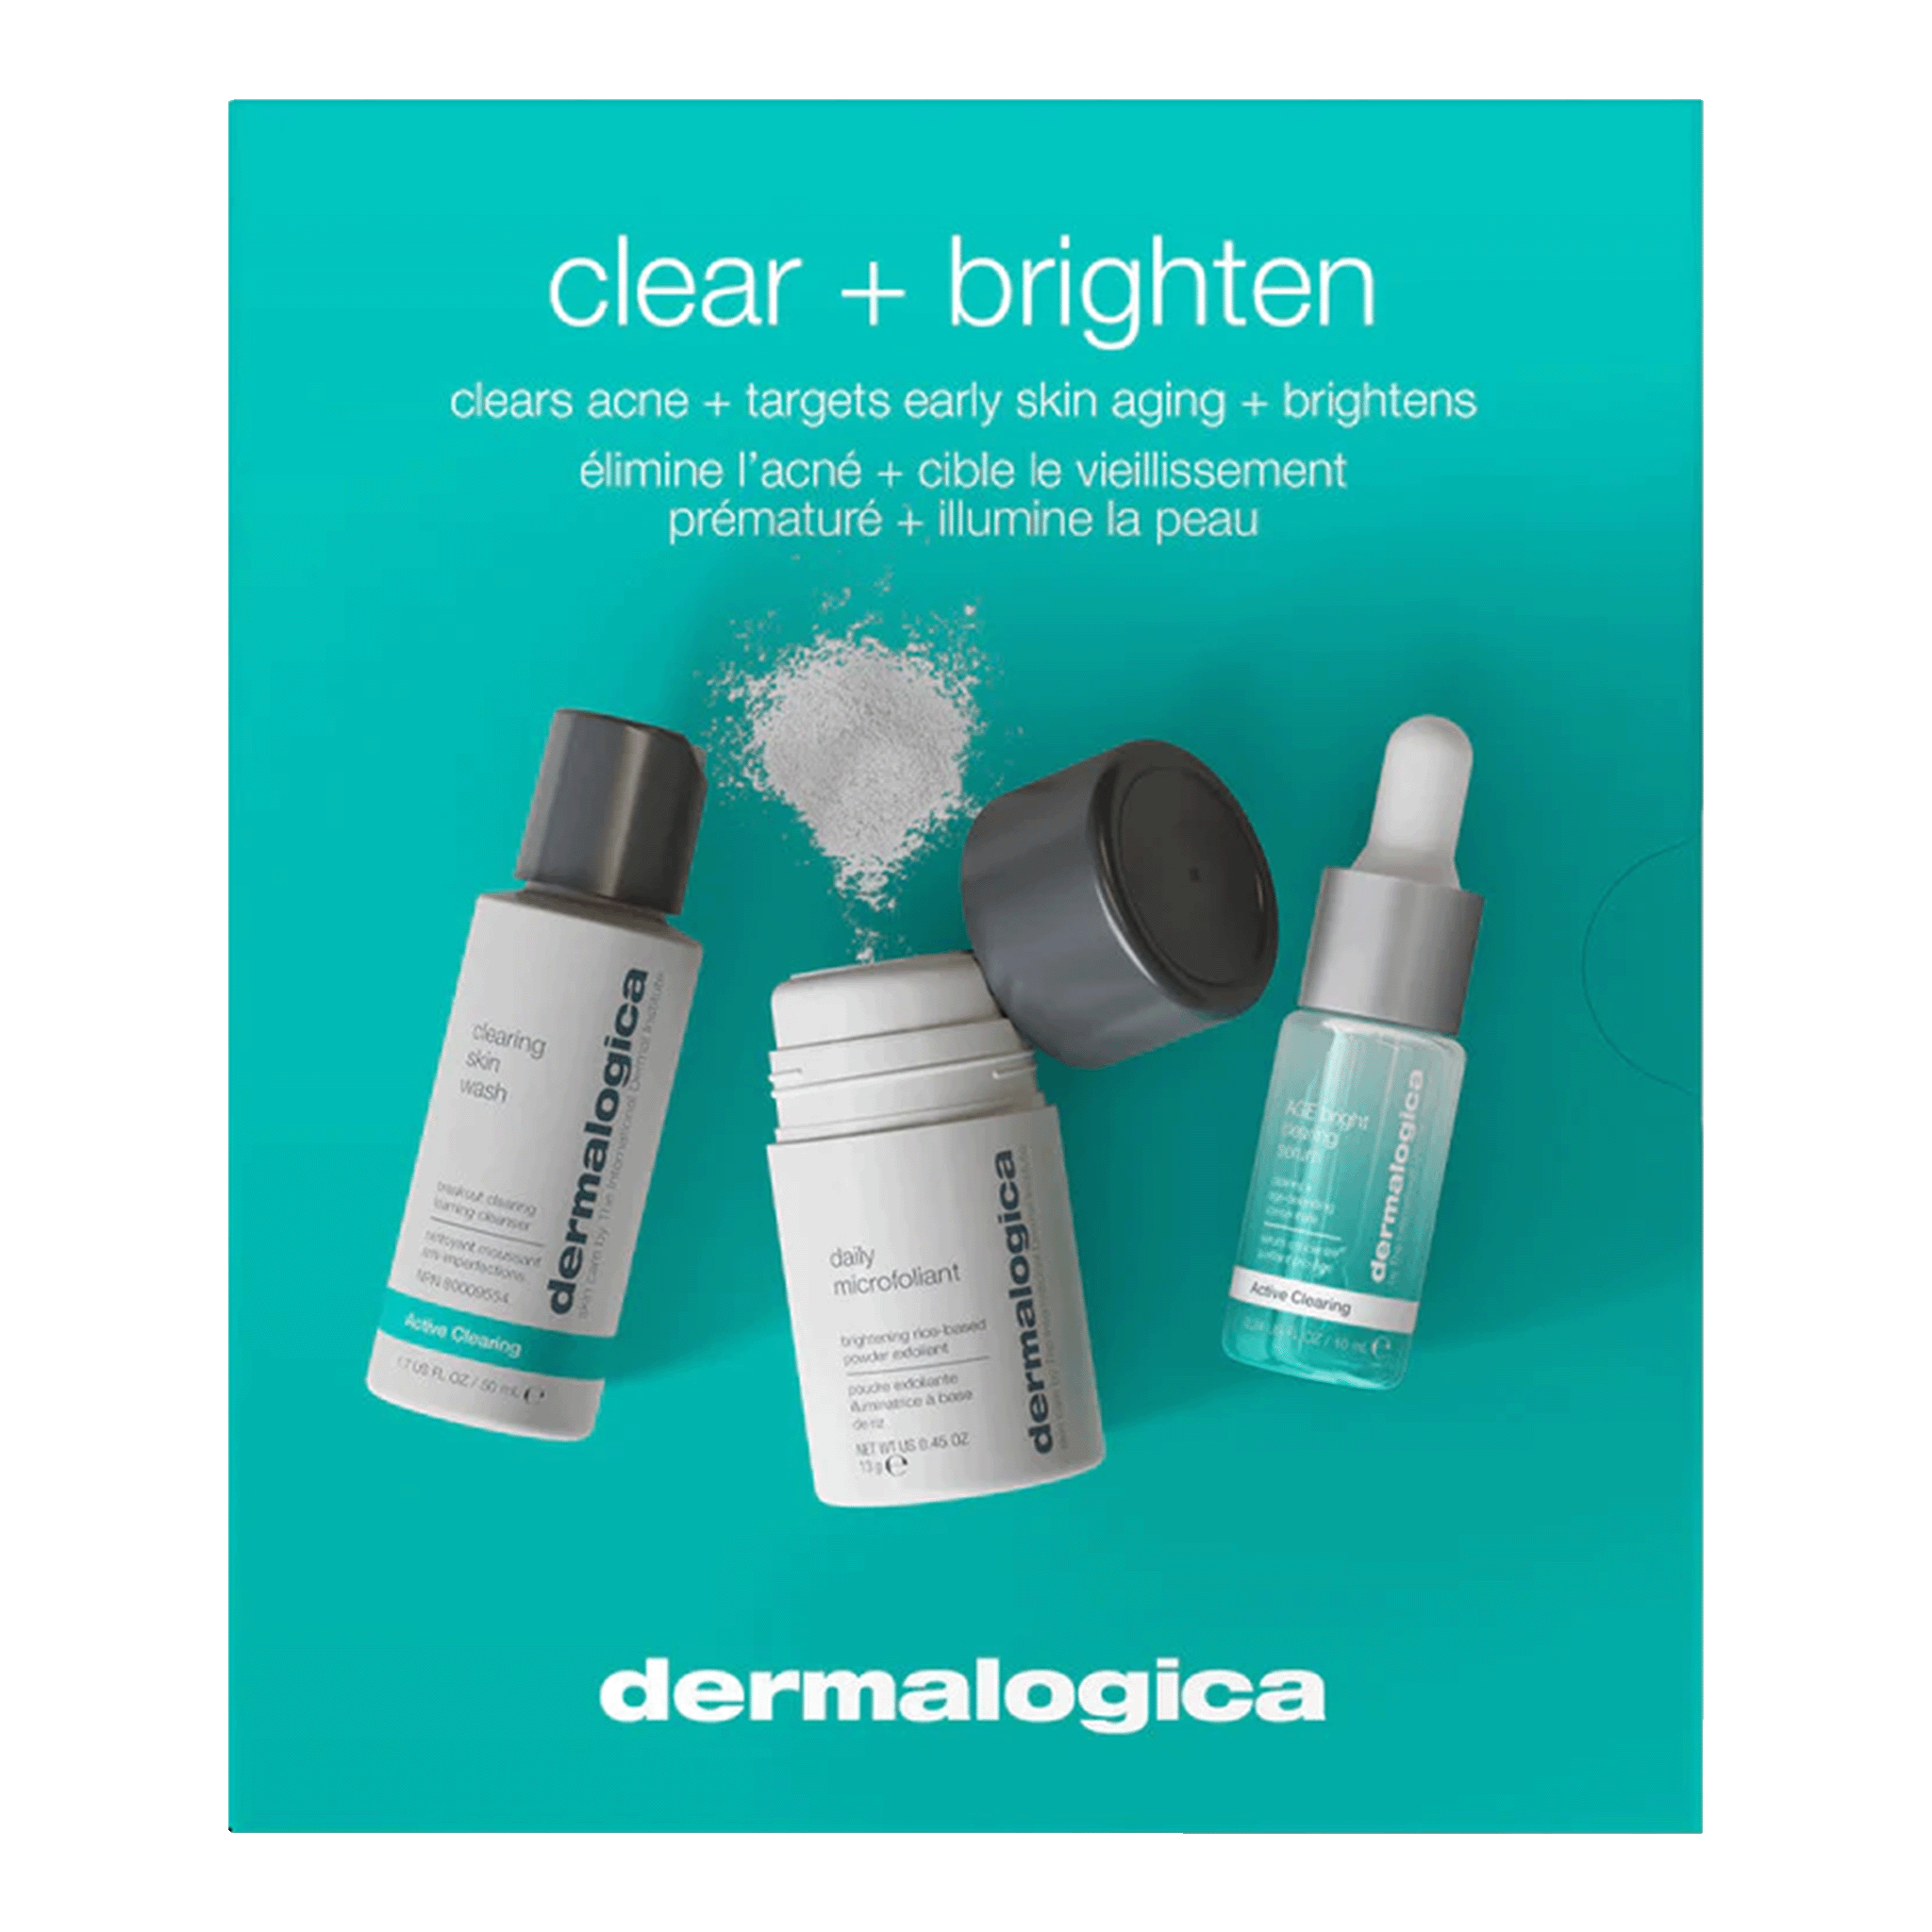 Dermalogica Active Clear + Brighten Kit